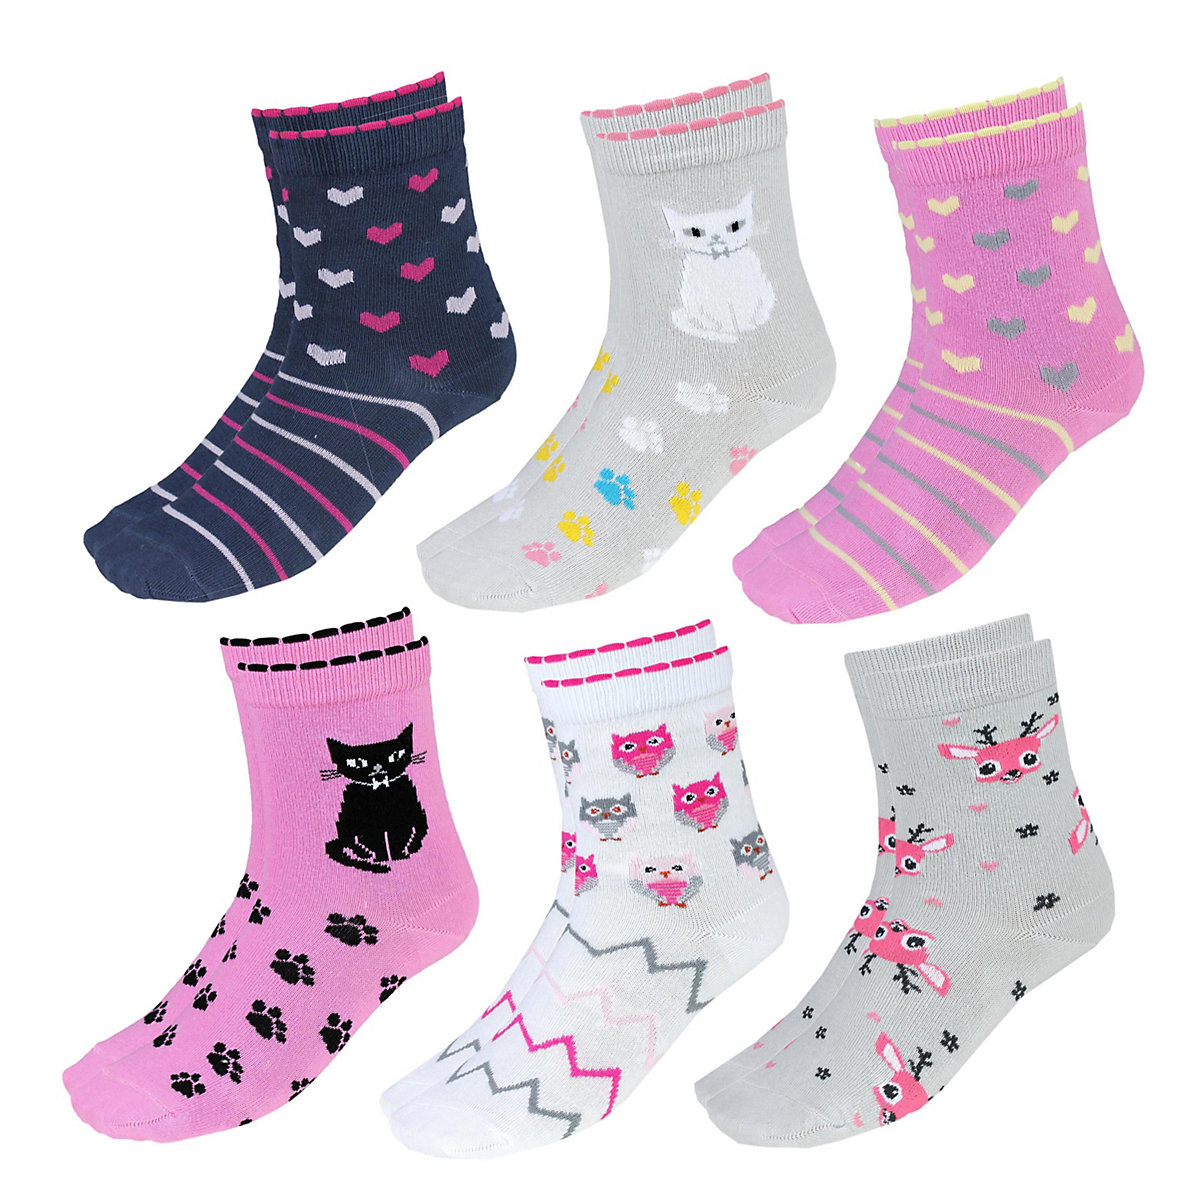 TupTam Kinder Socken Mädchen Jungen Bunt Gemustert 6er Pack für Kinder rosa/grau